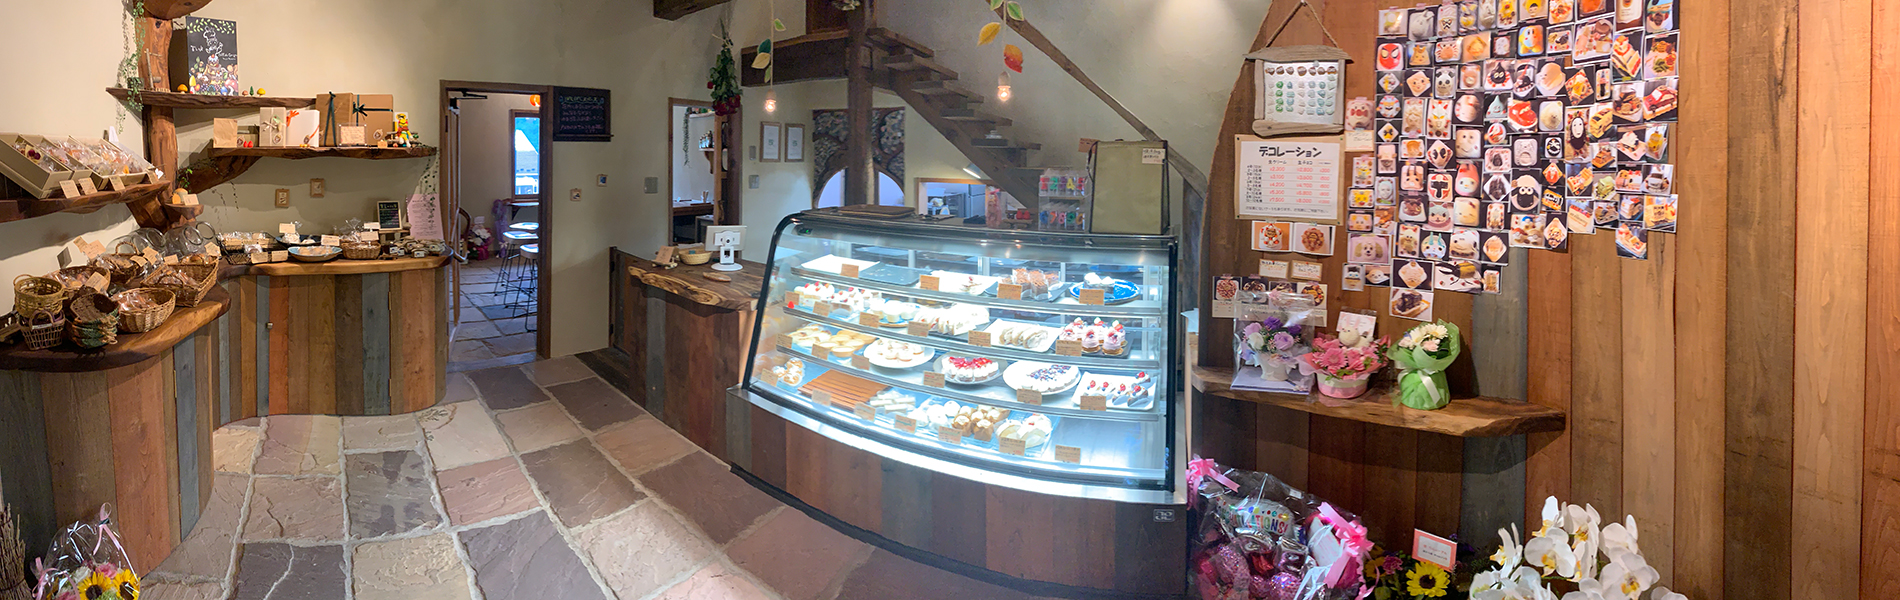 菓子工房garcon ここは栃木県日光市にあるキリフリ谷のおかしやさん 夫婦2人で営む小さなお店です